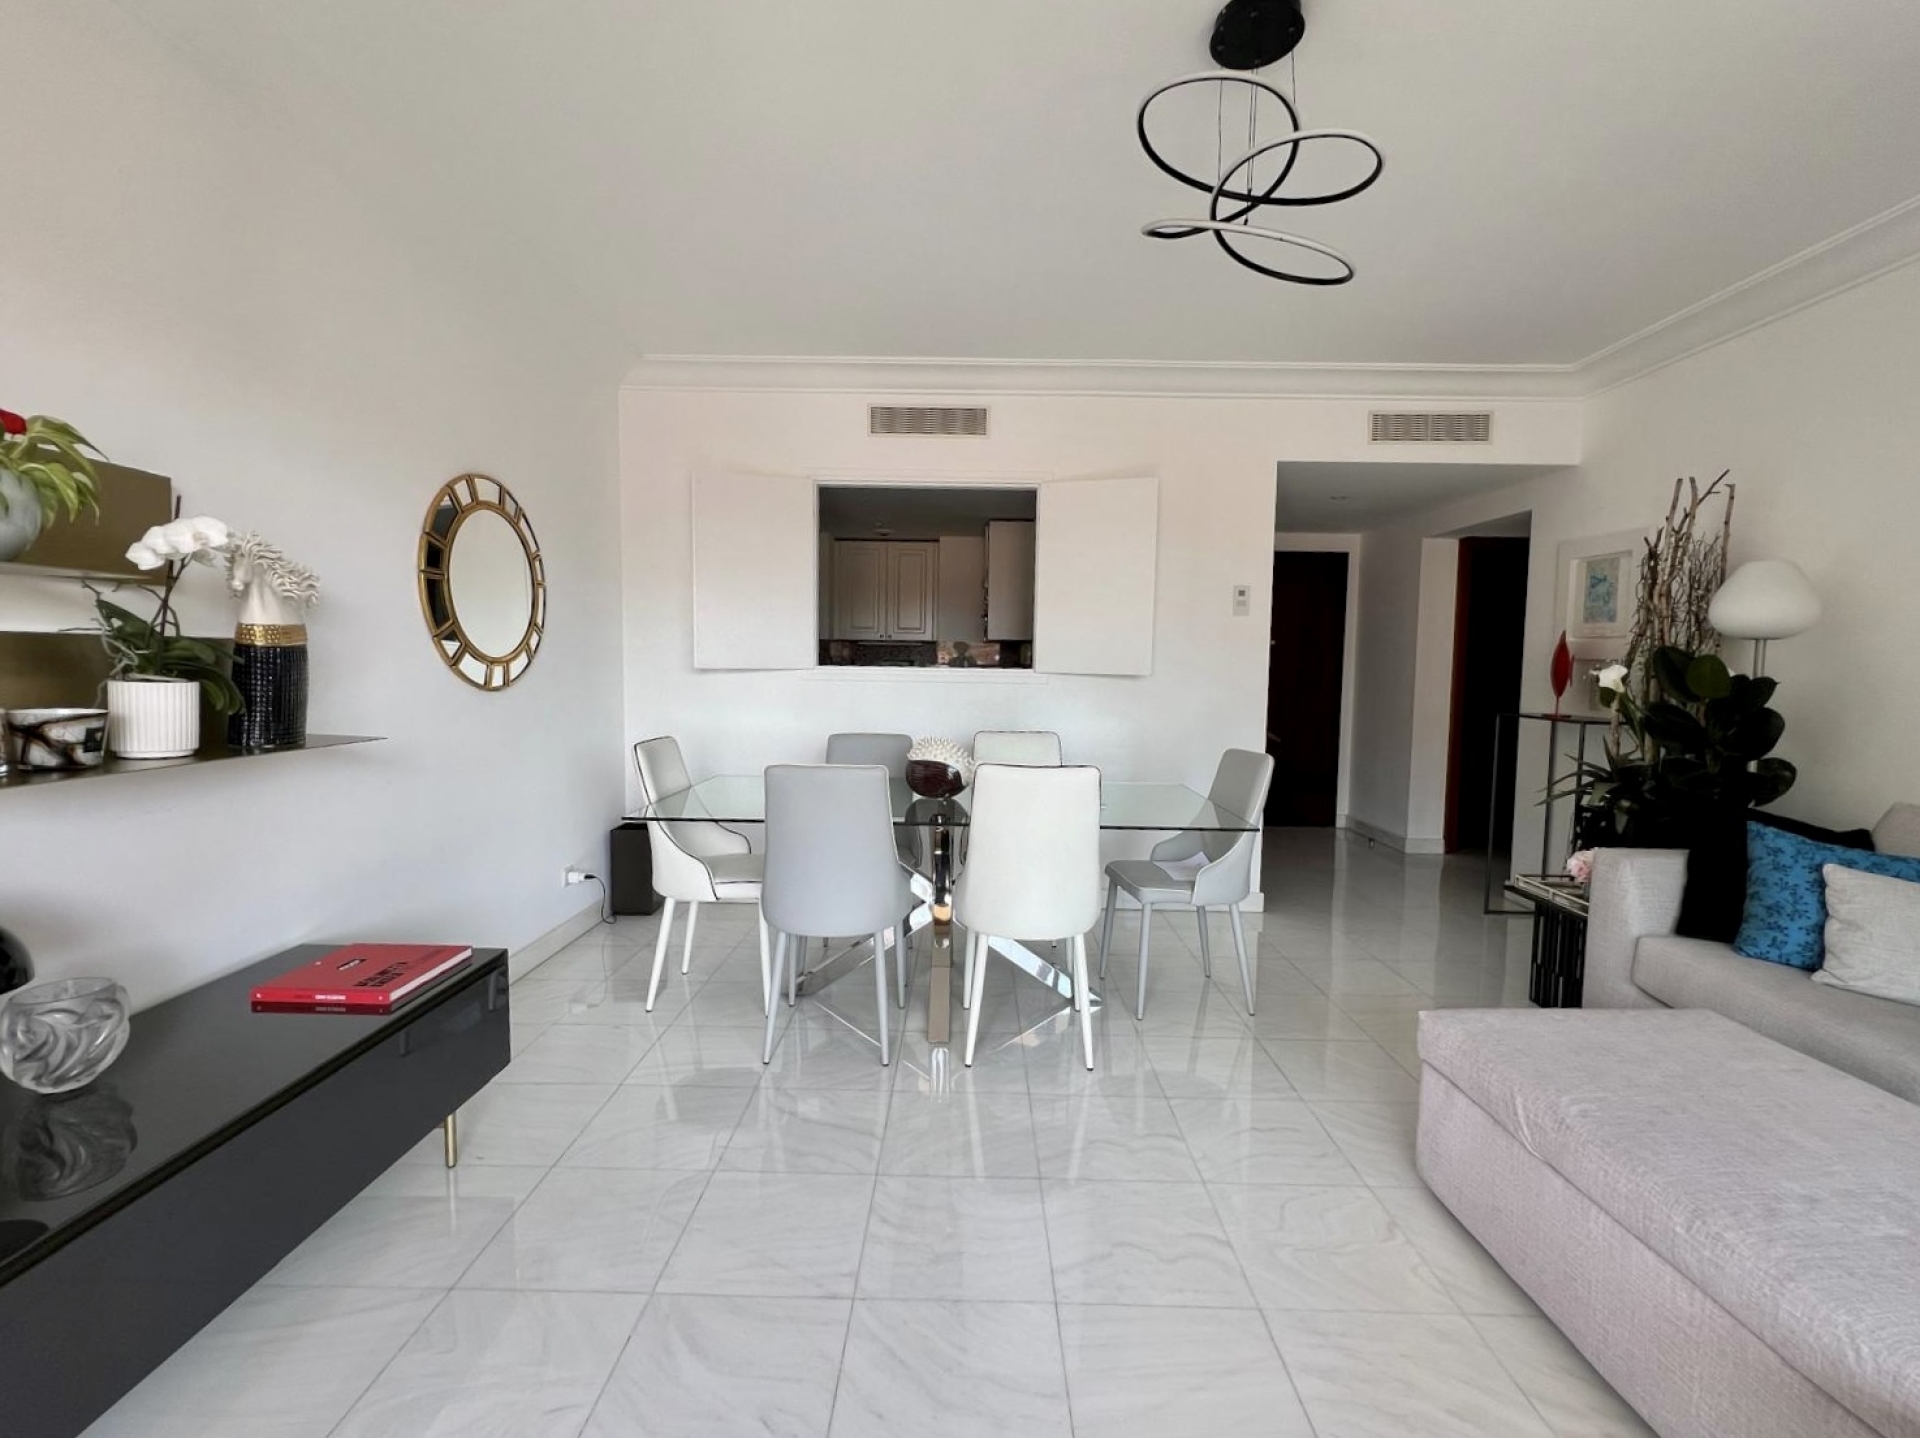 Dotta Appartement de 3 pieces a louer - SAINT GEORGES - La Rousse - Monaco - imgimage00004